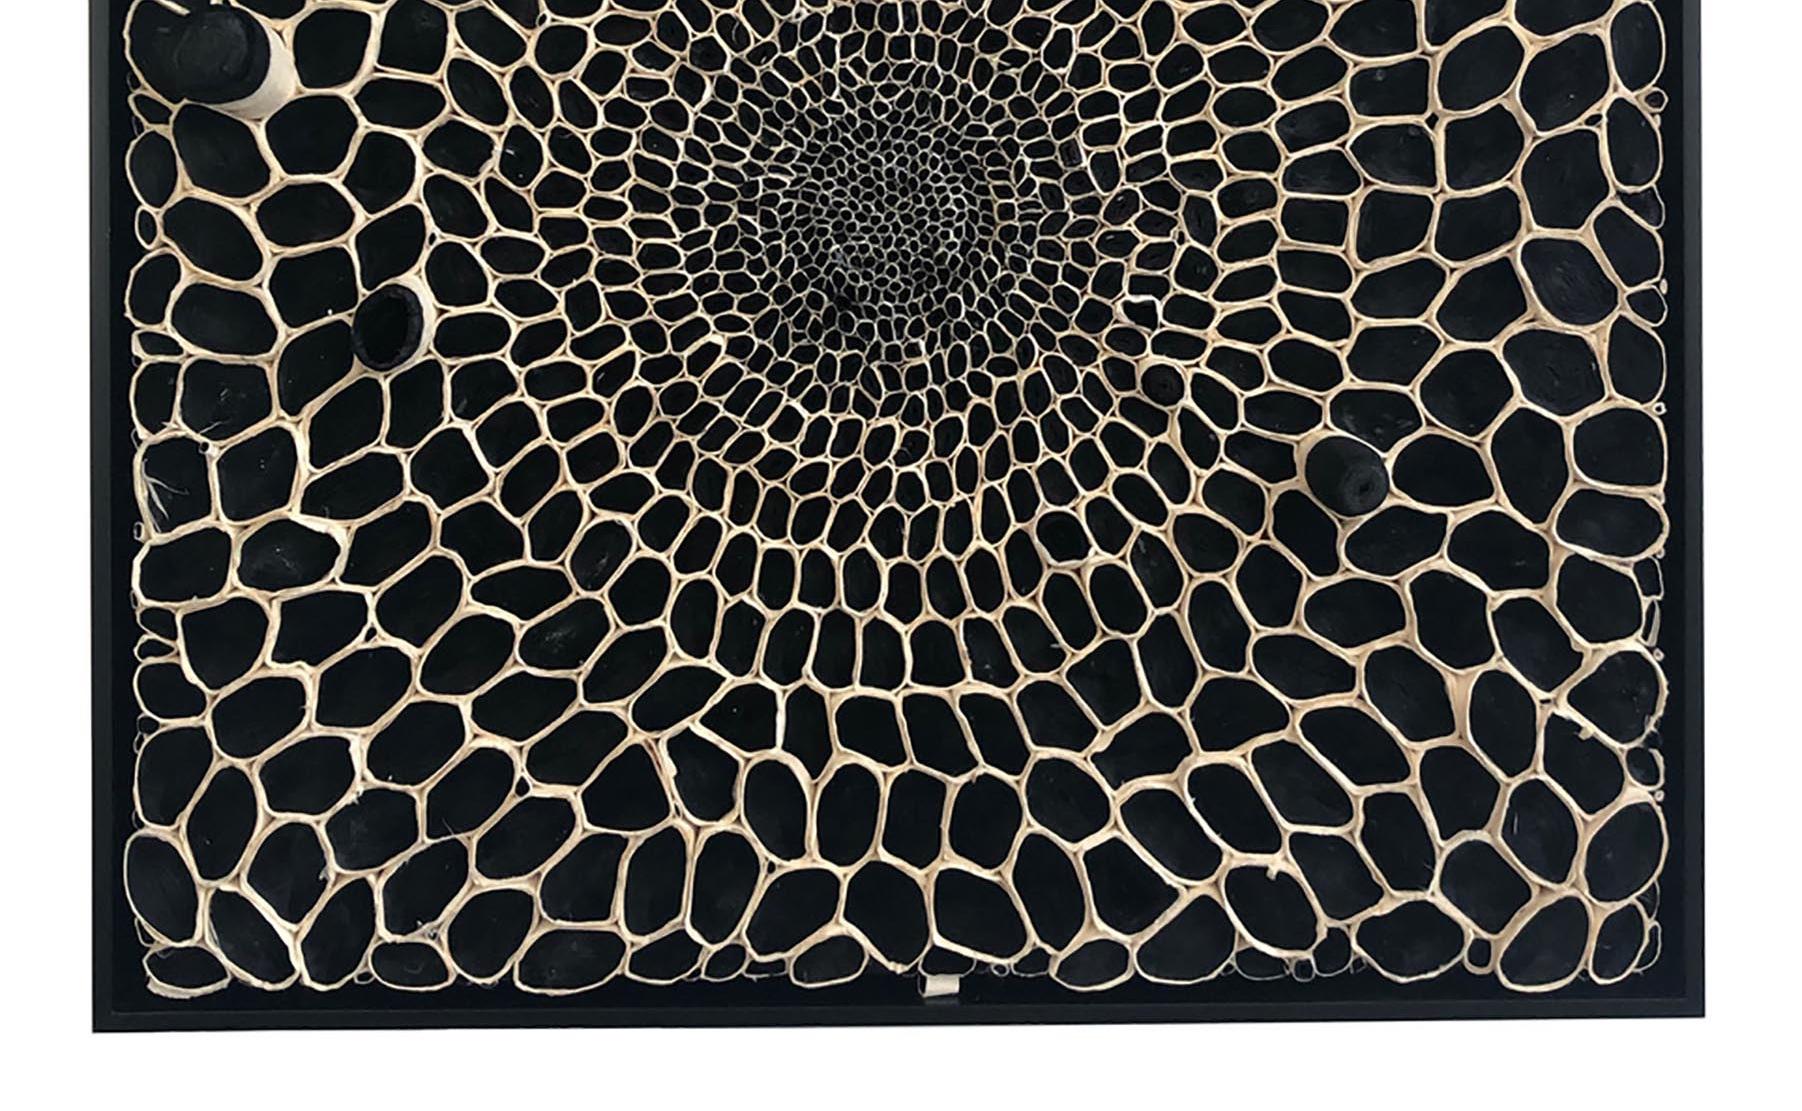 Ces pièces de papier tridimensionnelles en noir et blanc sont l'œuvre d'Amy Genser. Ces  Les pièces murales texturées, uniques, incarnent le mouvement et les processus. Elle manipule magistralement le papier - chaque pièce étant coupée, roulée et